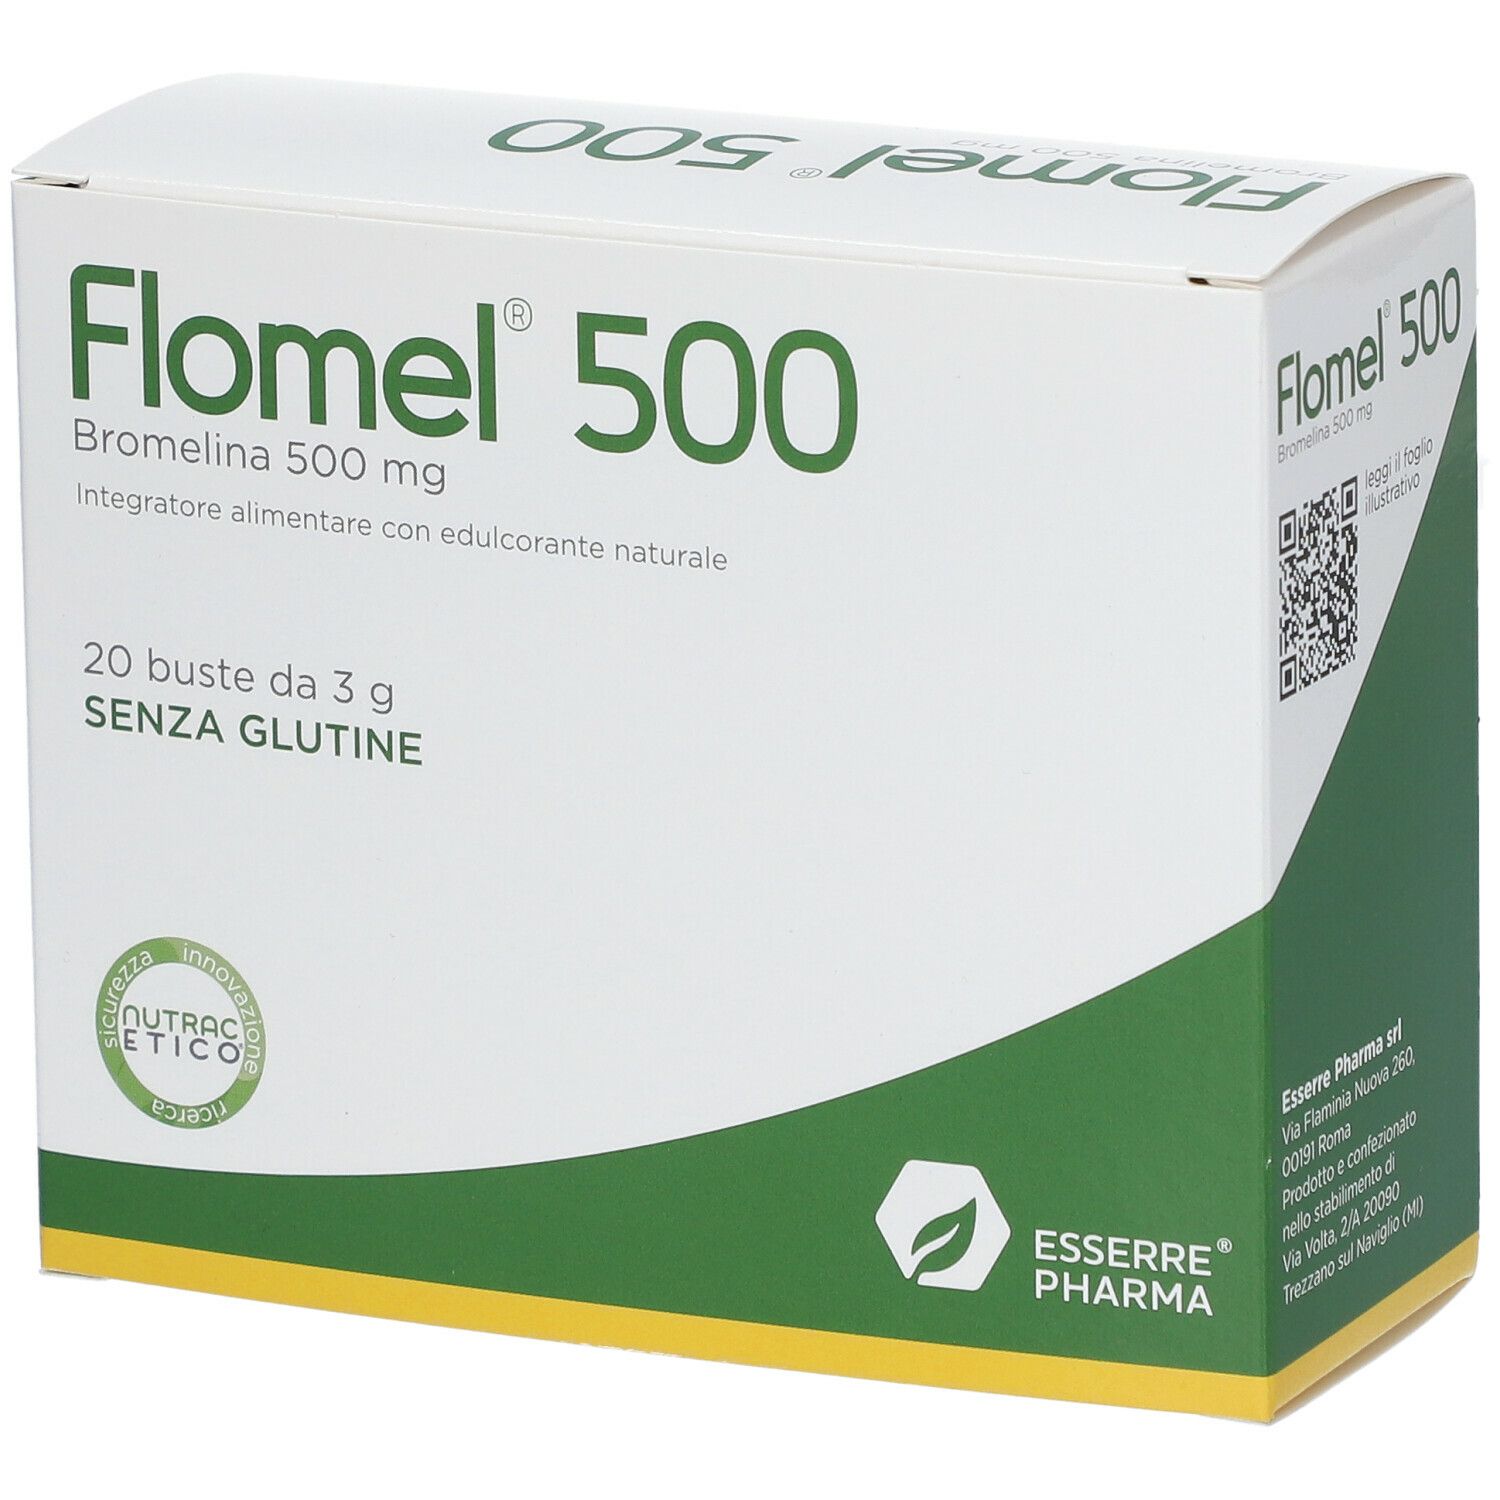 Image of ESSERRE® PHARMA Flomel® 500